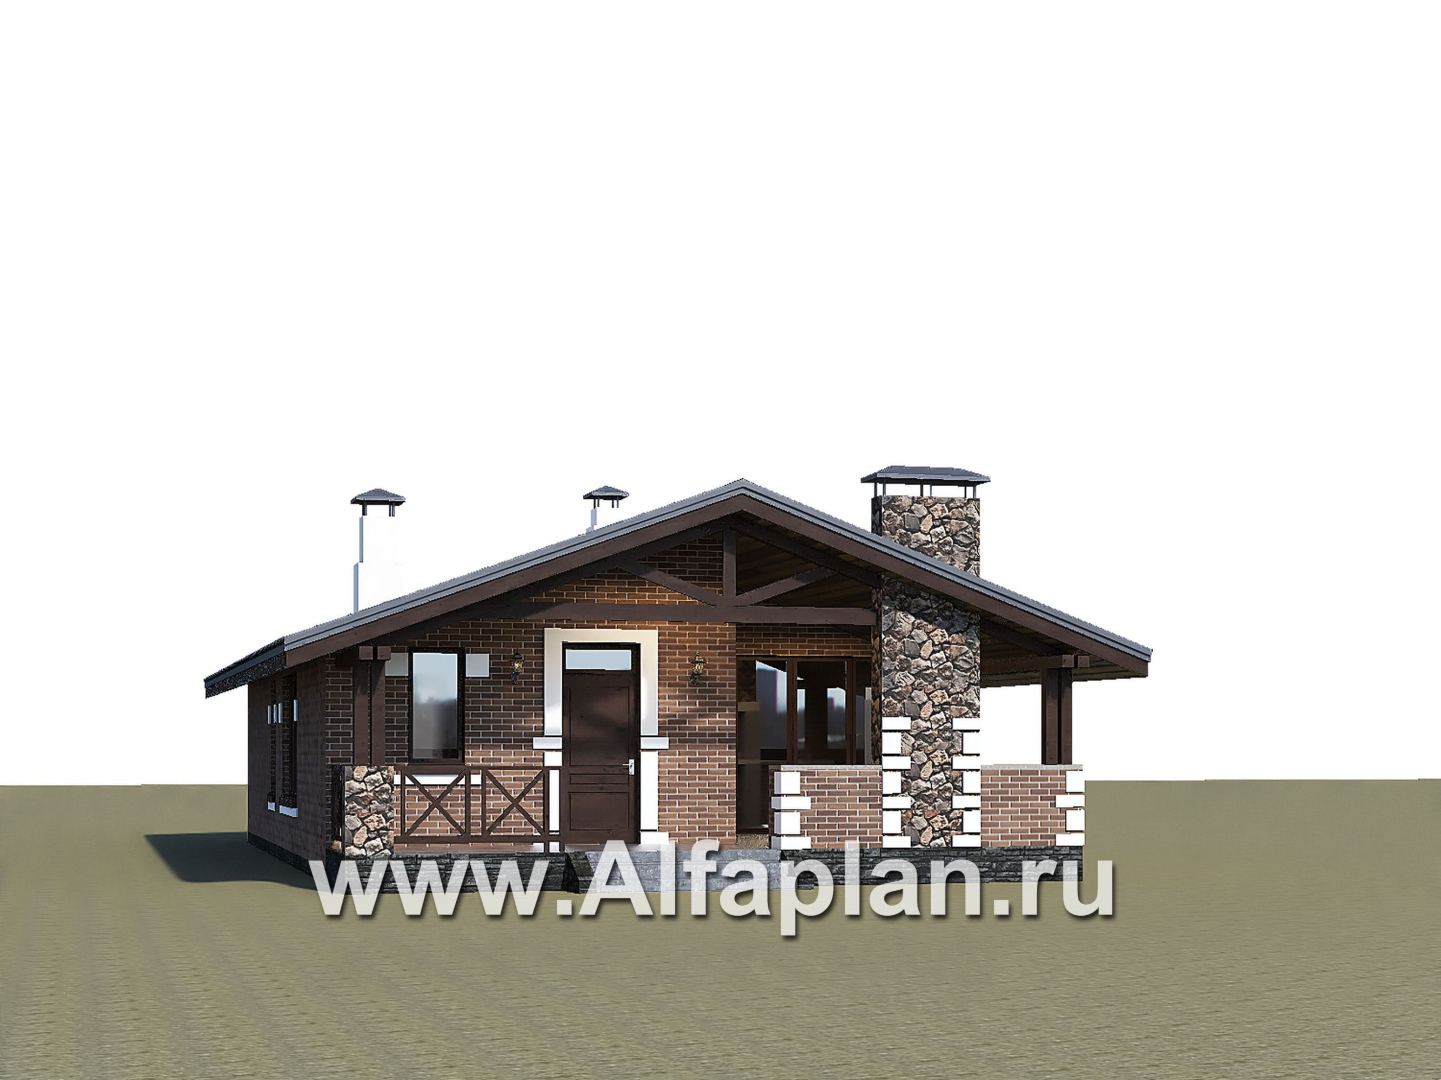 Проекты домов Альфаплан - «Родия» - проект одноэтажного дома, 2 спальни, с террасой и двускатной крышей, в скандинавском стиле - дополнительное изображение №1